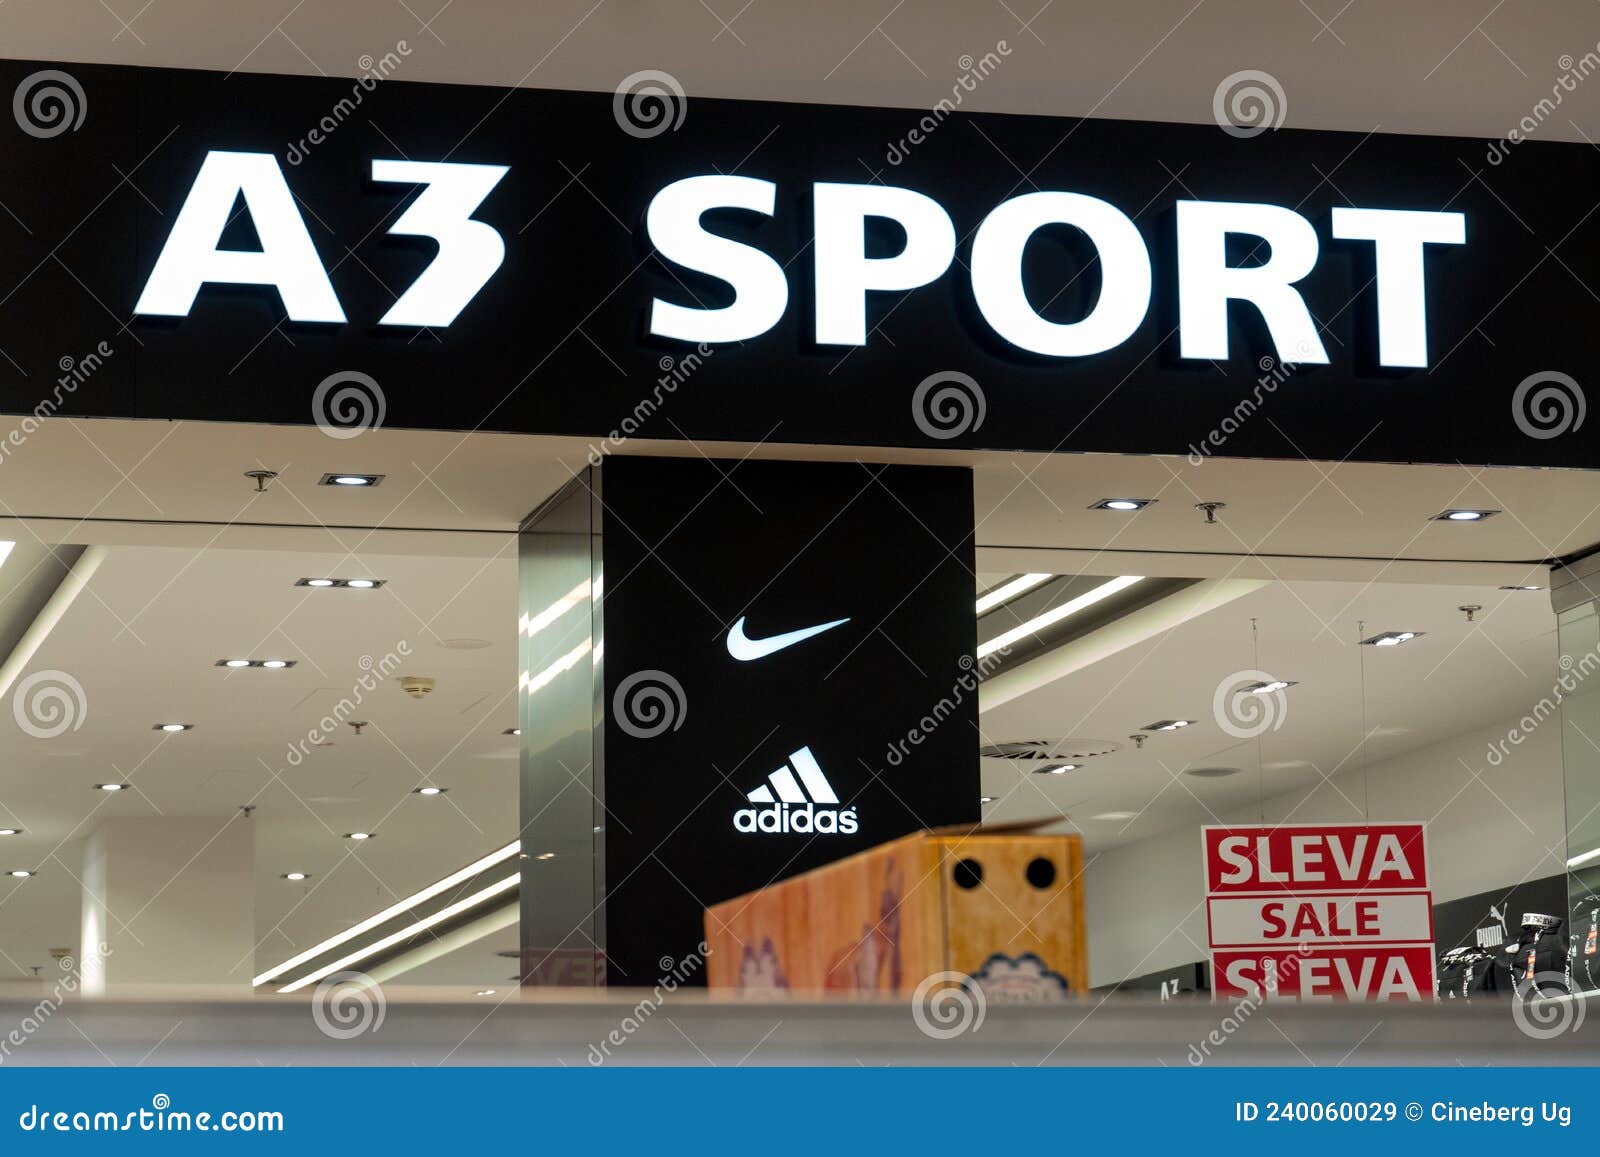 Desigualdad chatarra Lechuguilla A3 sport store editorial stock image. Image of facade - 240060029